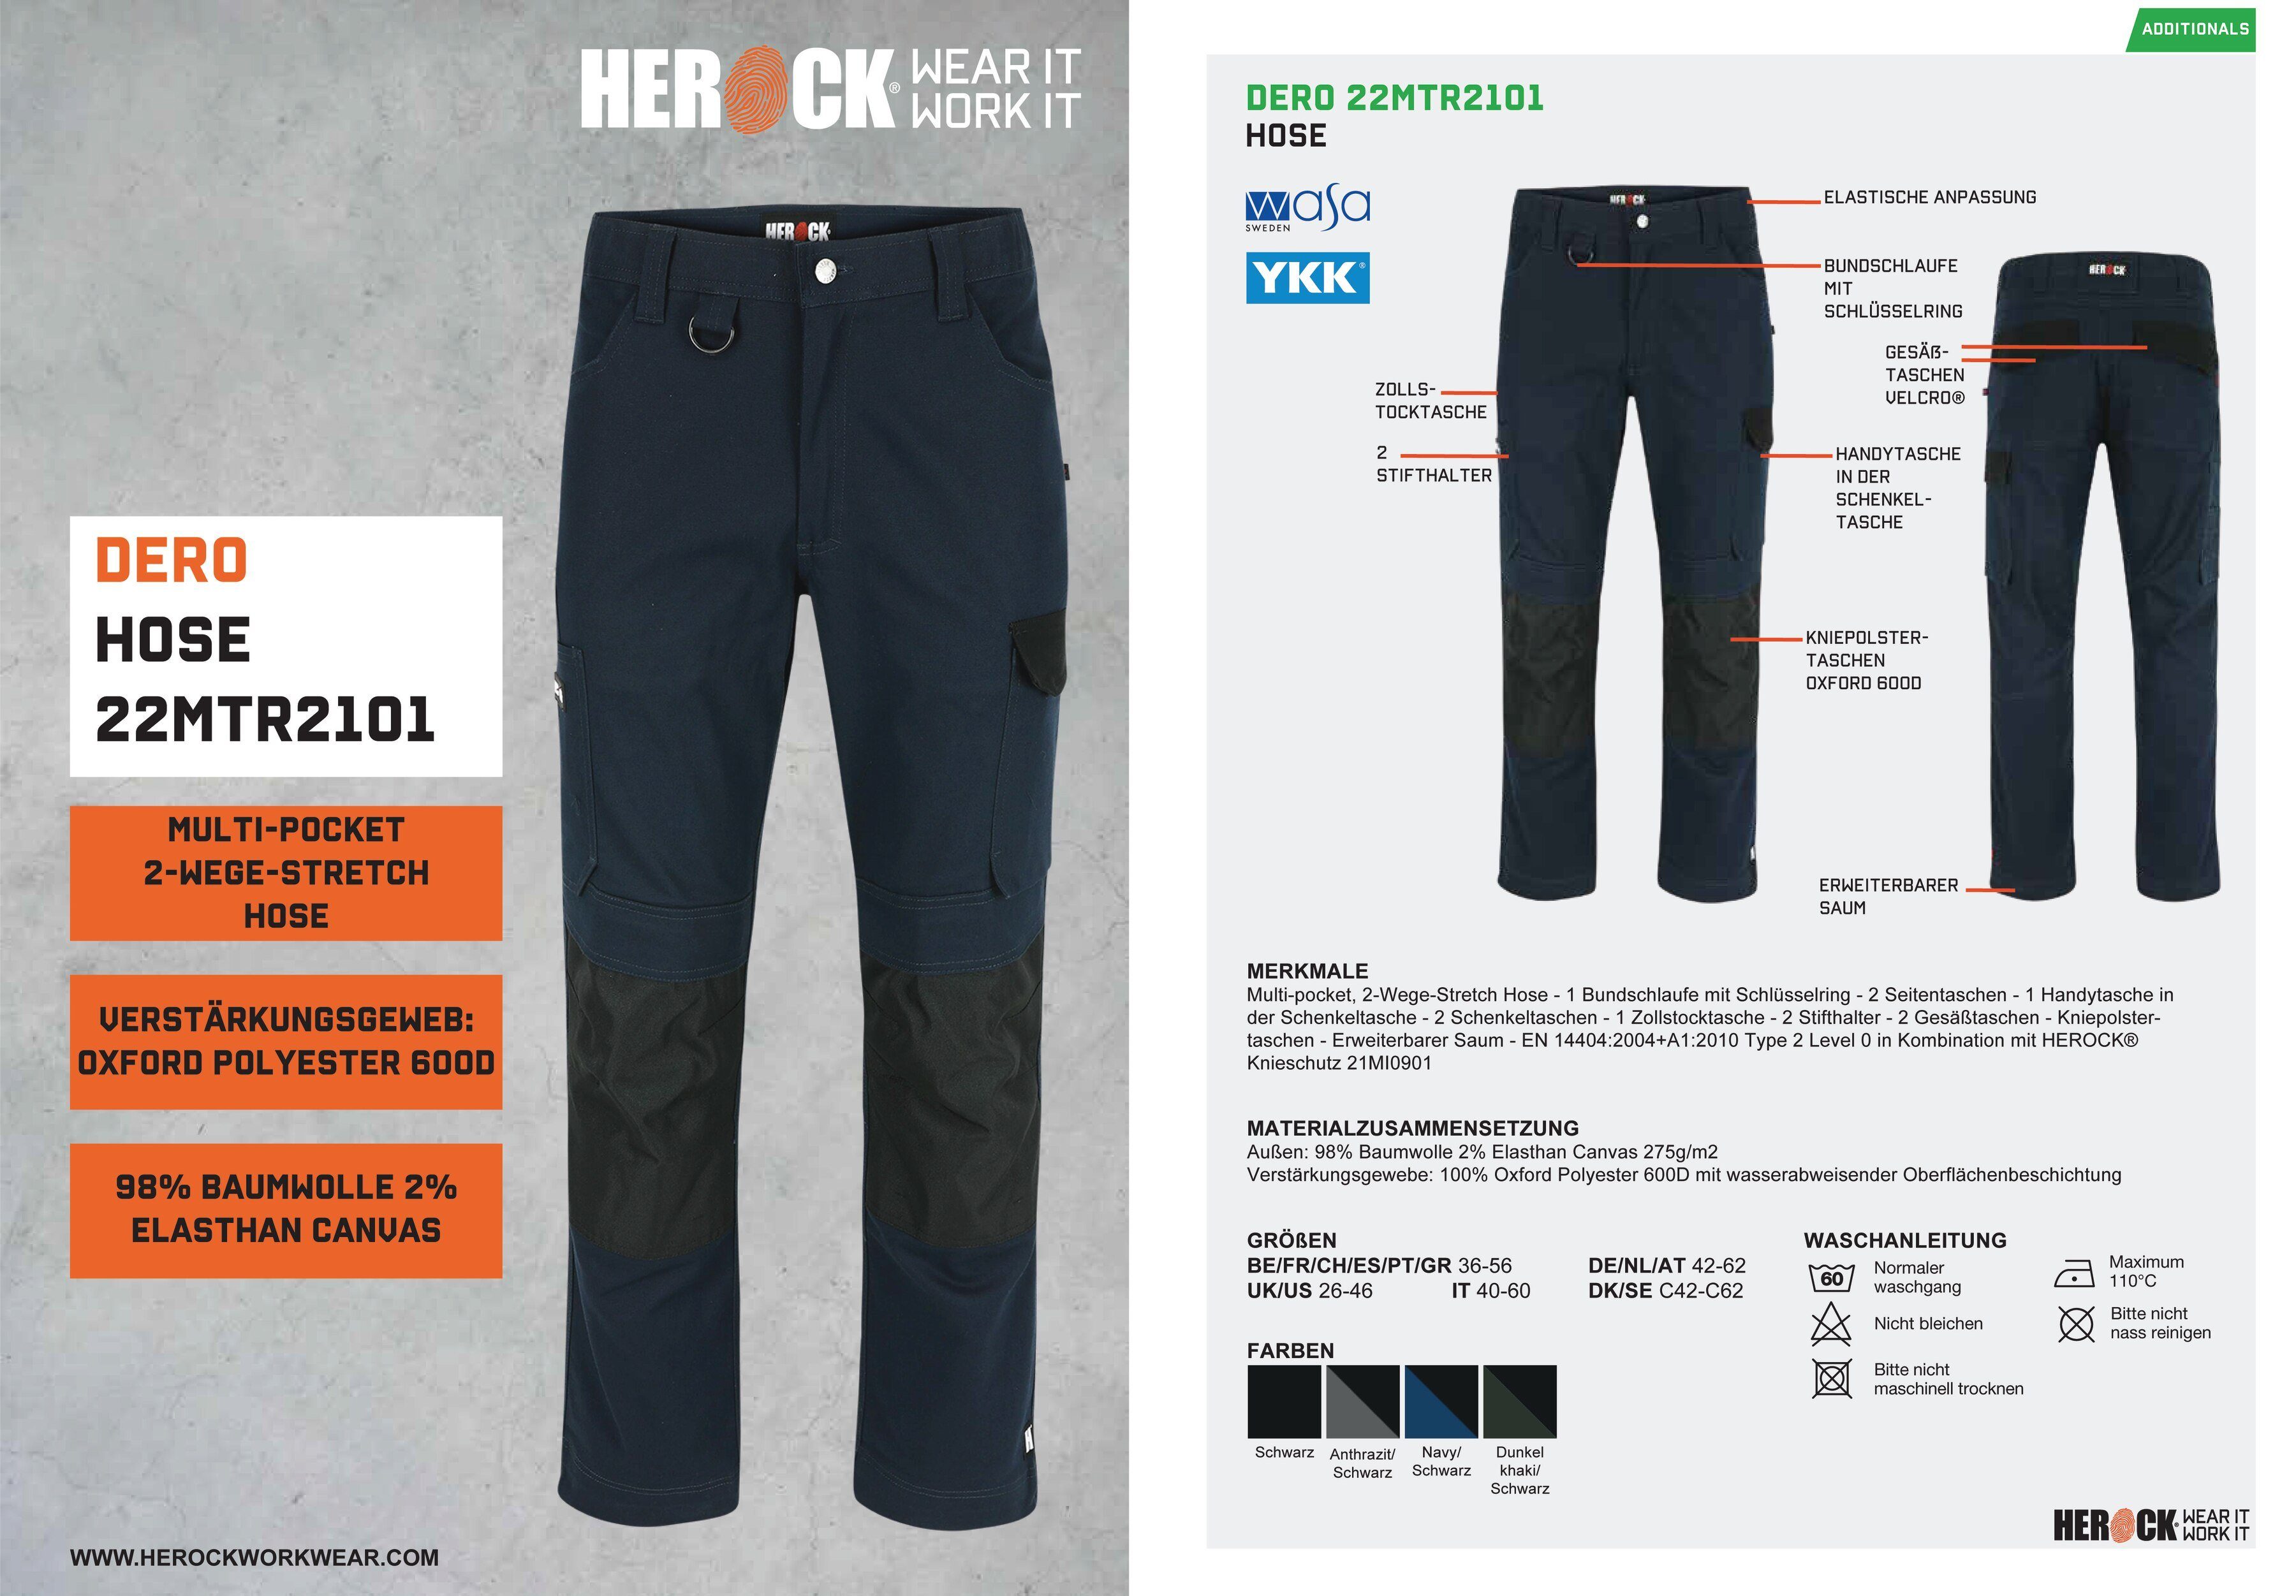 Herock Arbeitshose DERO Slim 2-Wege-Stretch, Passform, Fit marine Multi-Pocket, wasserabweisend